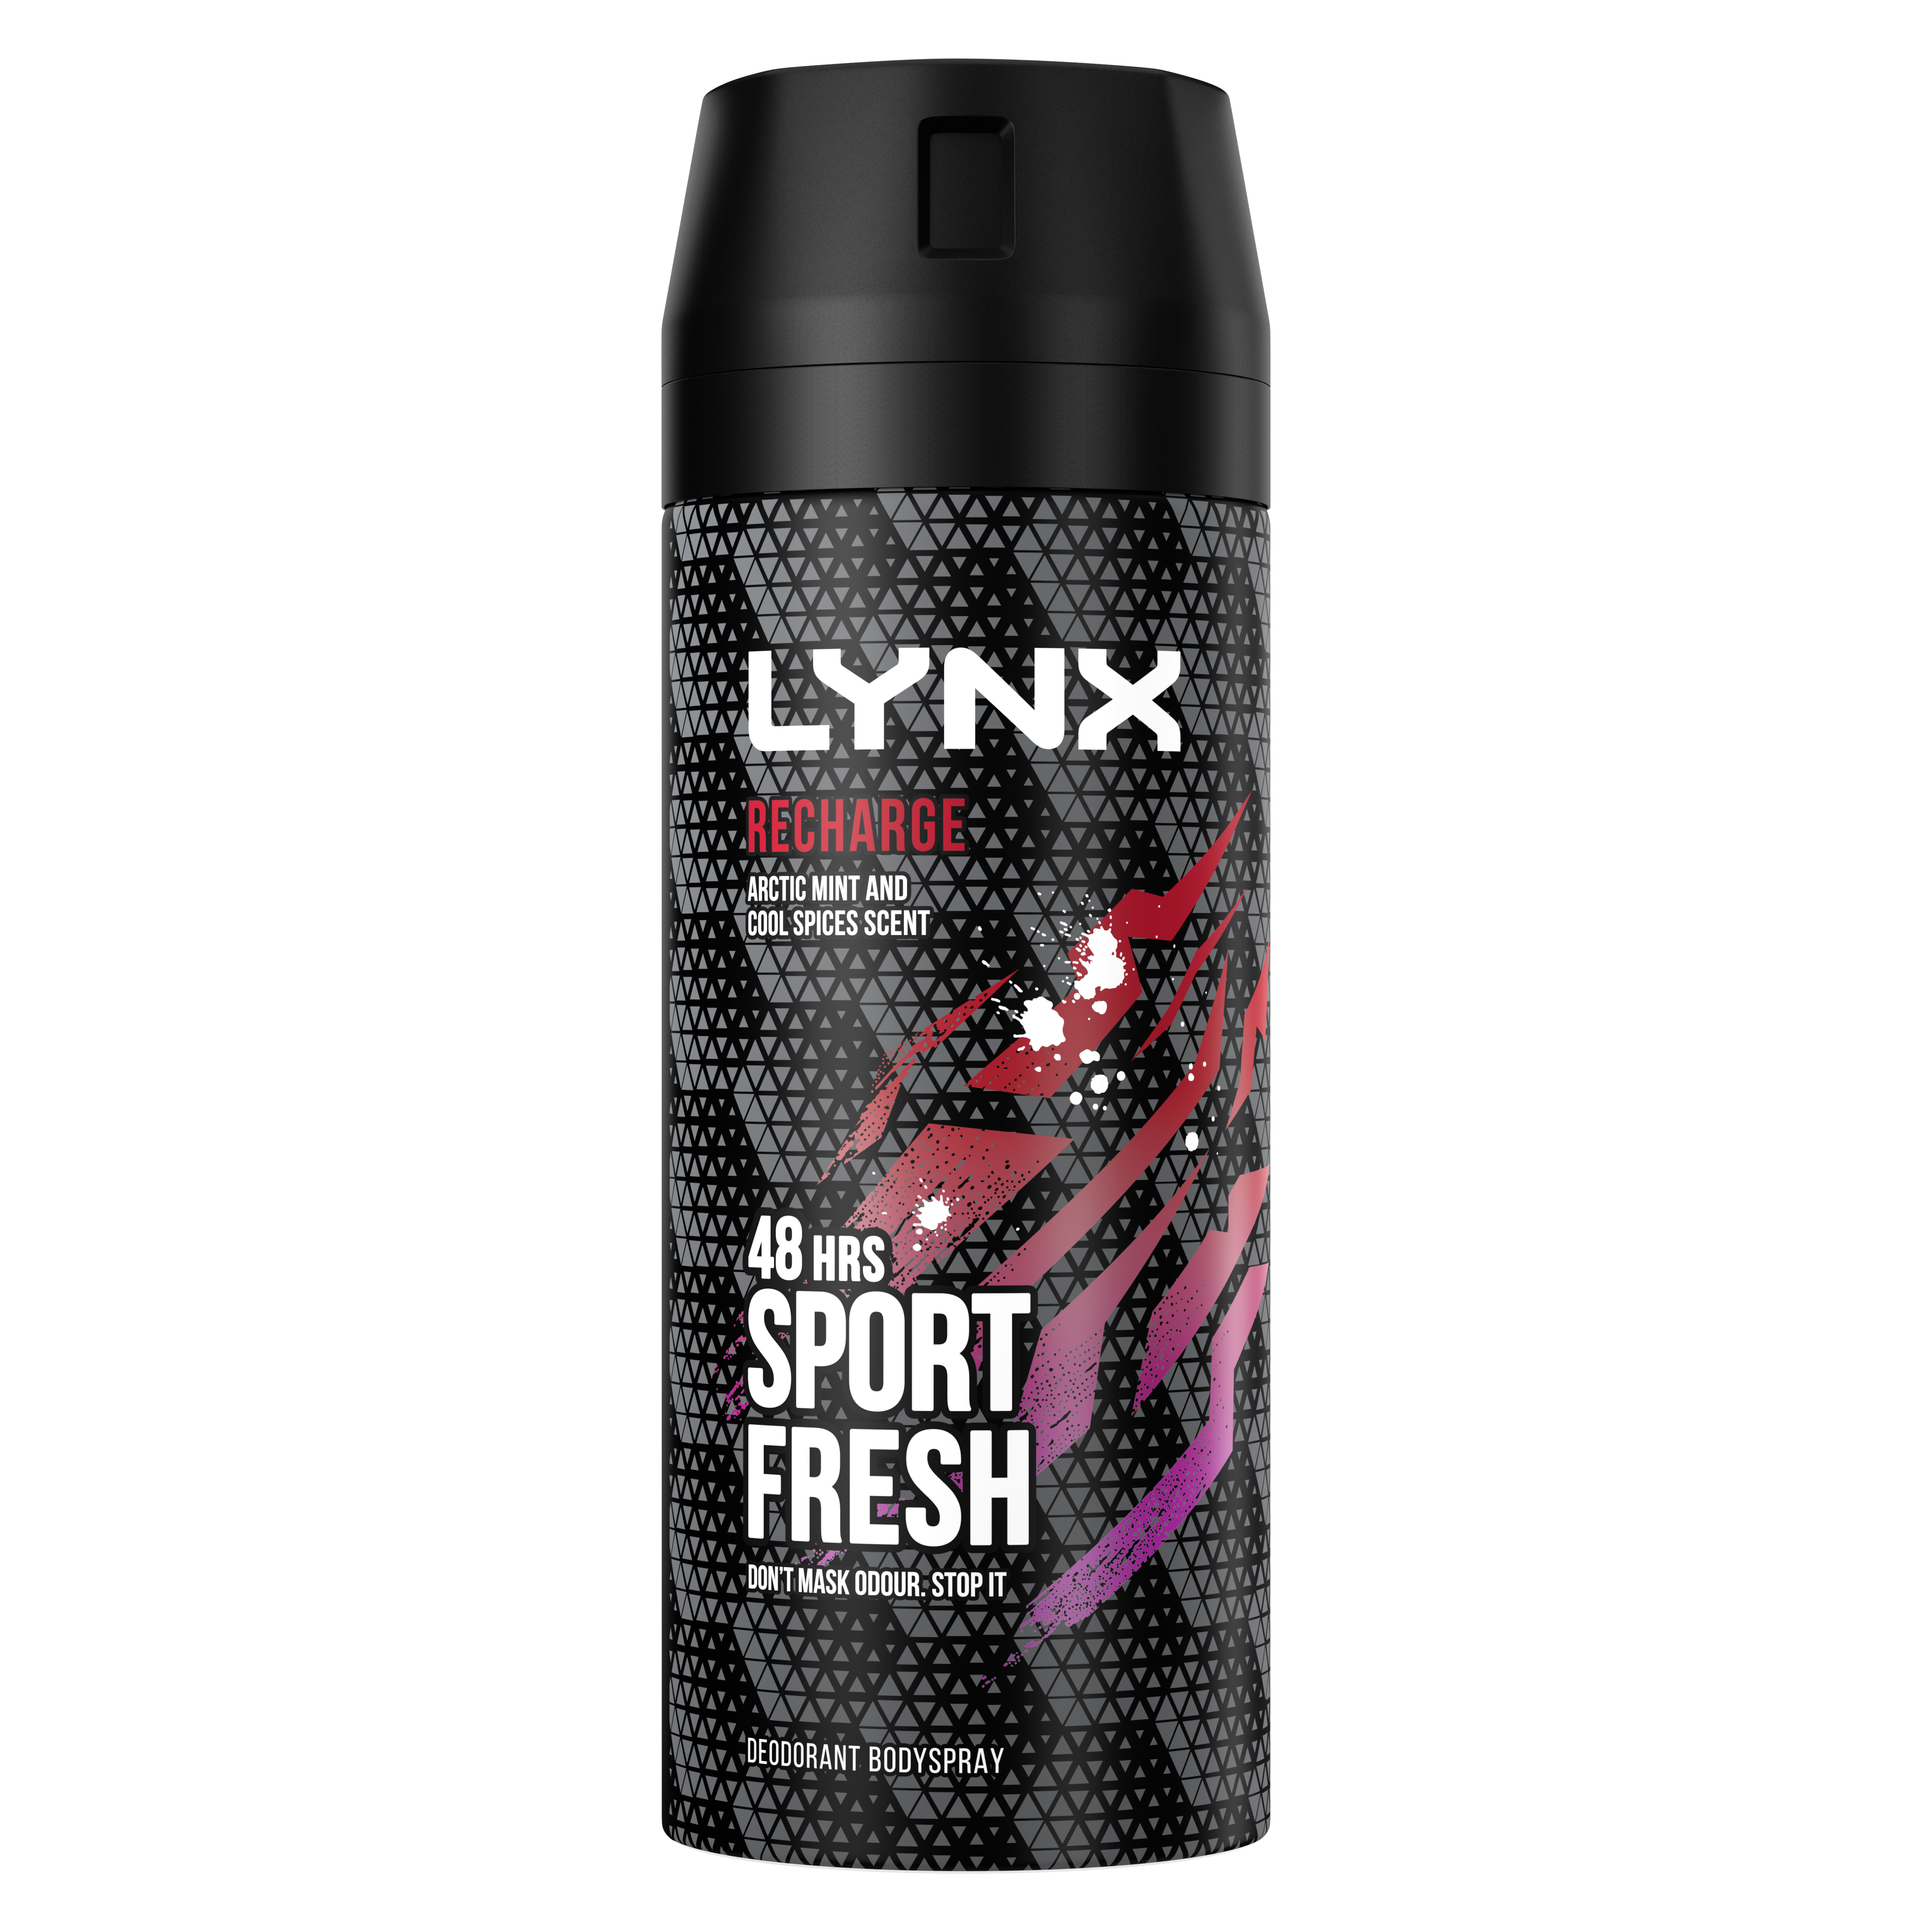 Unilever’s Lynx freshens up brand for Gen Z consumers